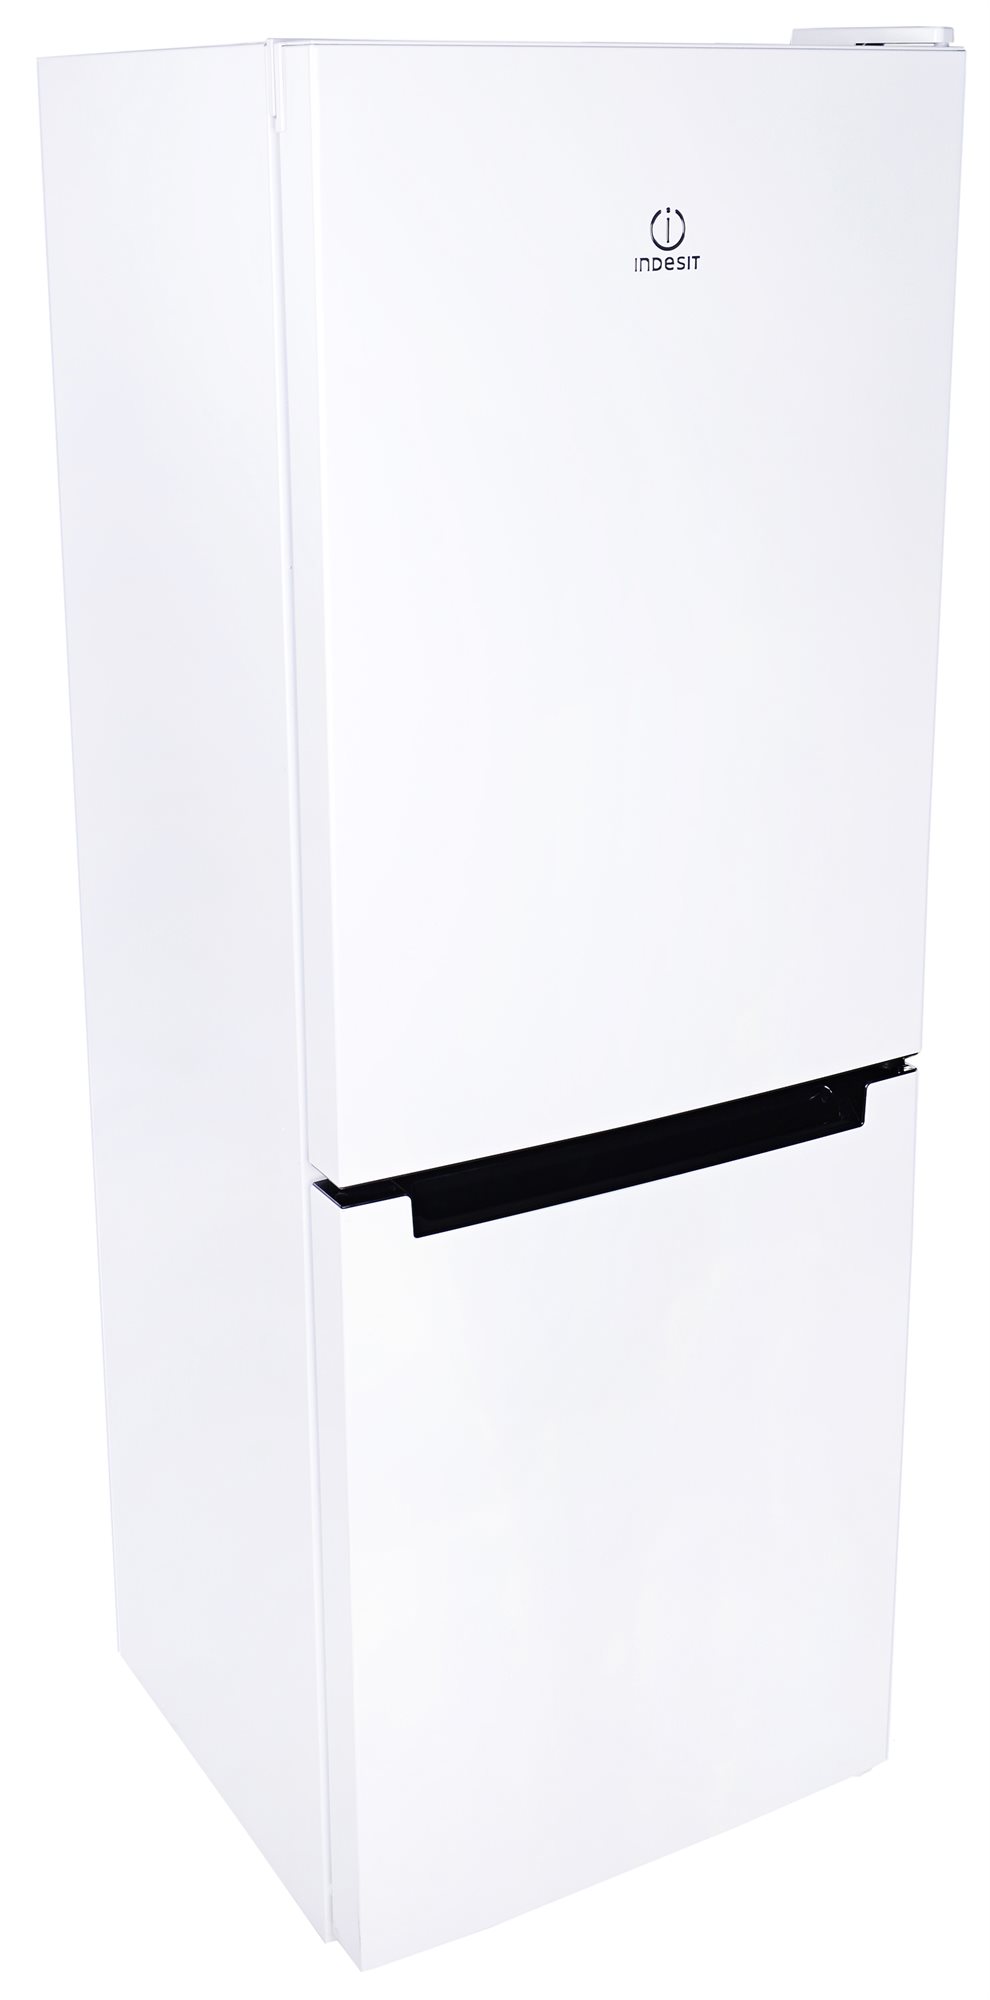 Холодильники индезит отзывы специалистов и покупателей. Холодильник Индезит DS 4180 W.